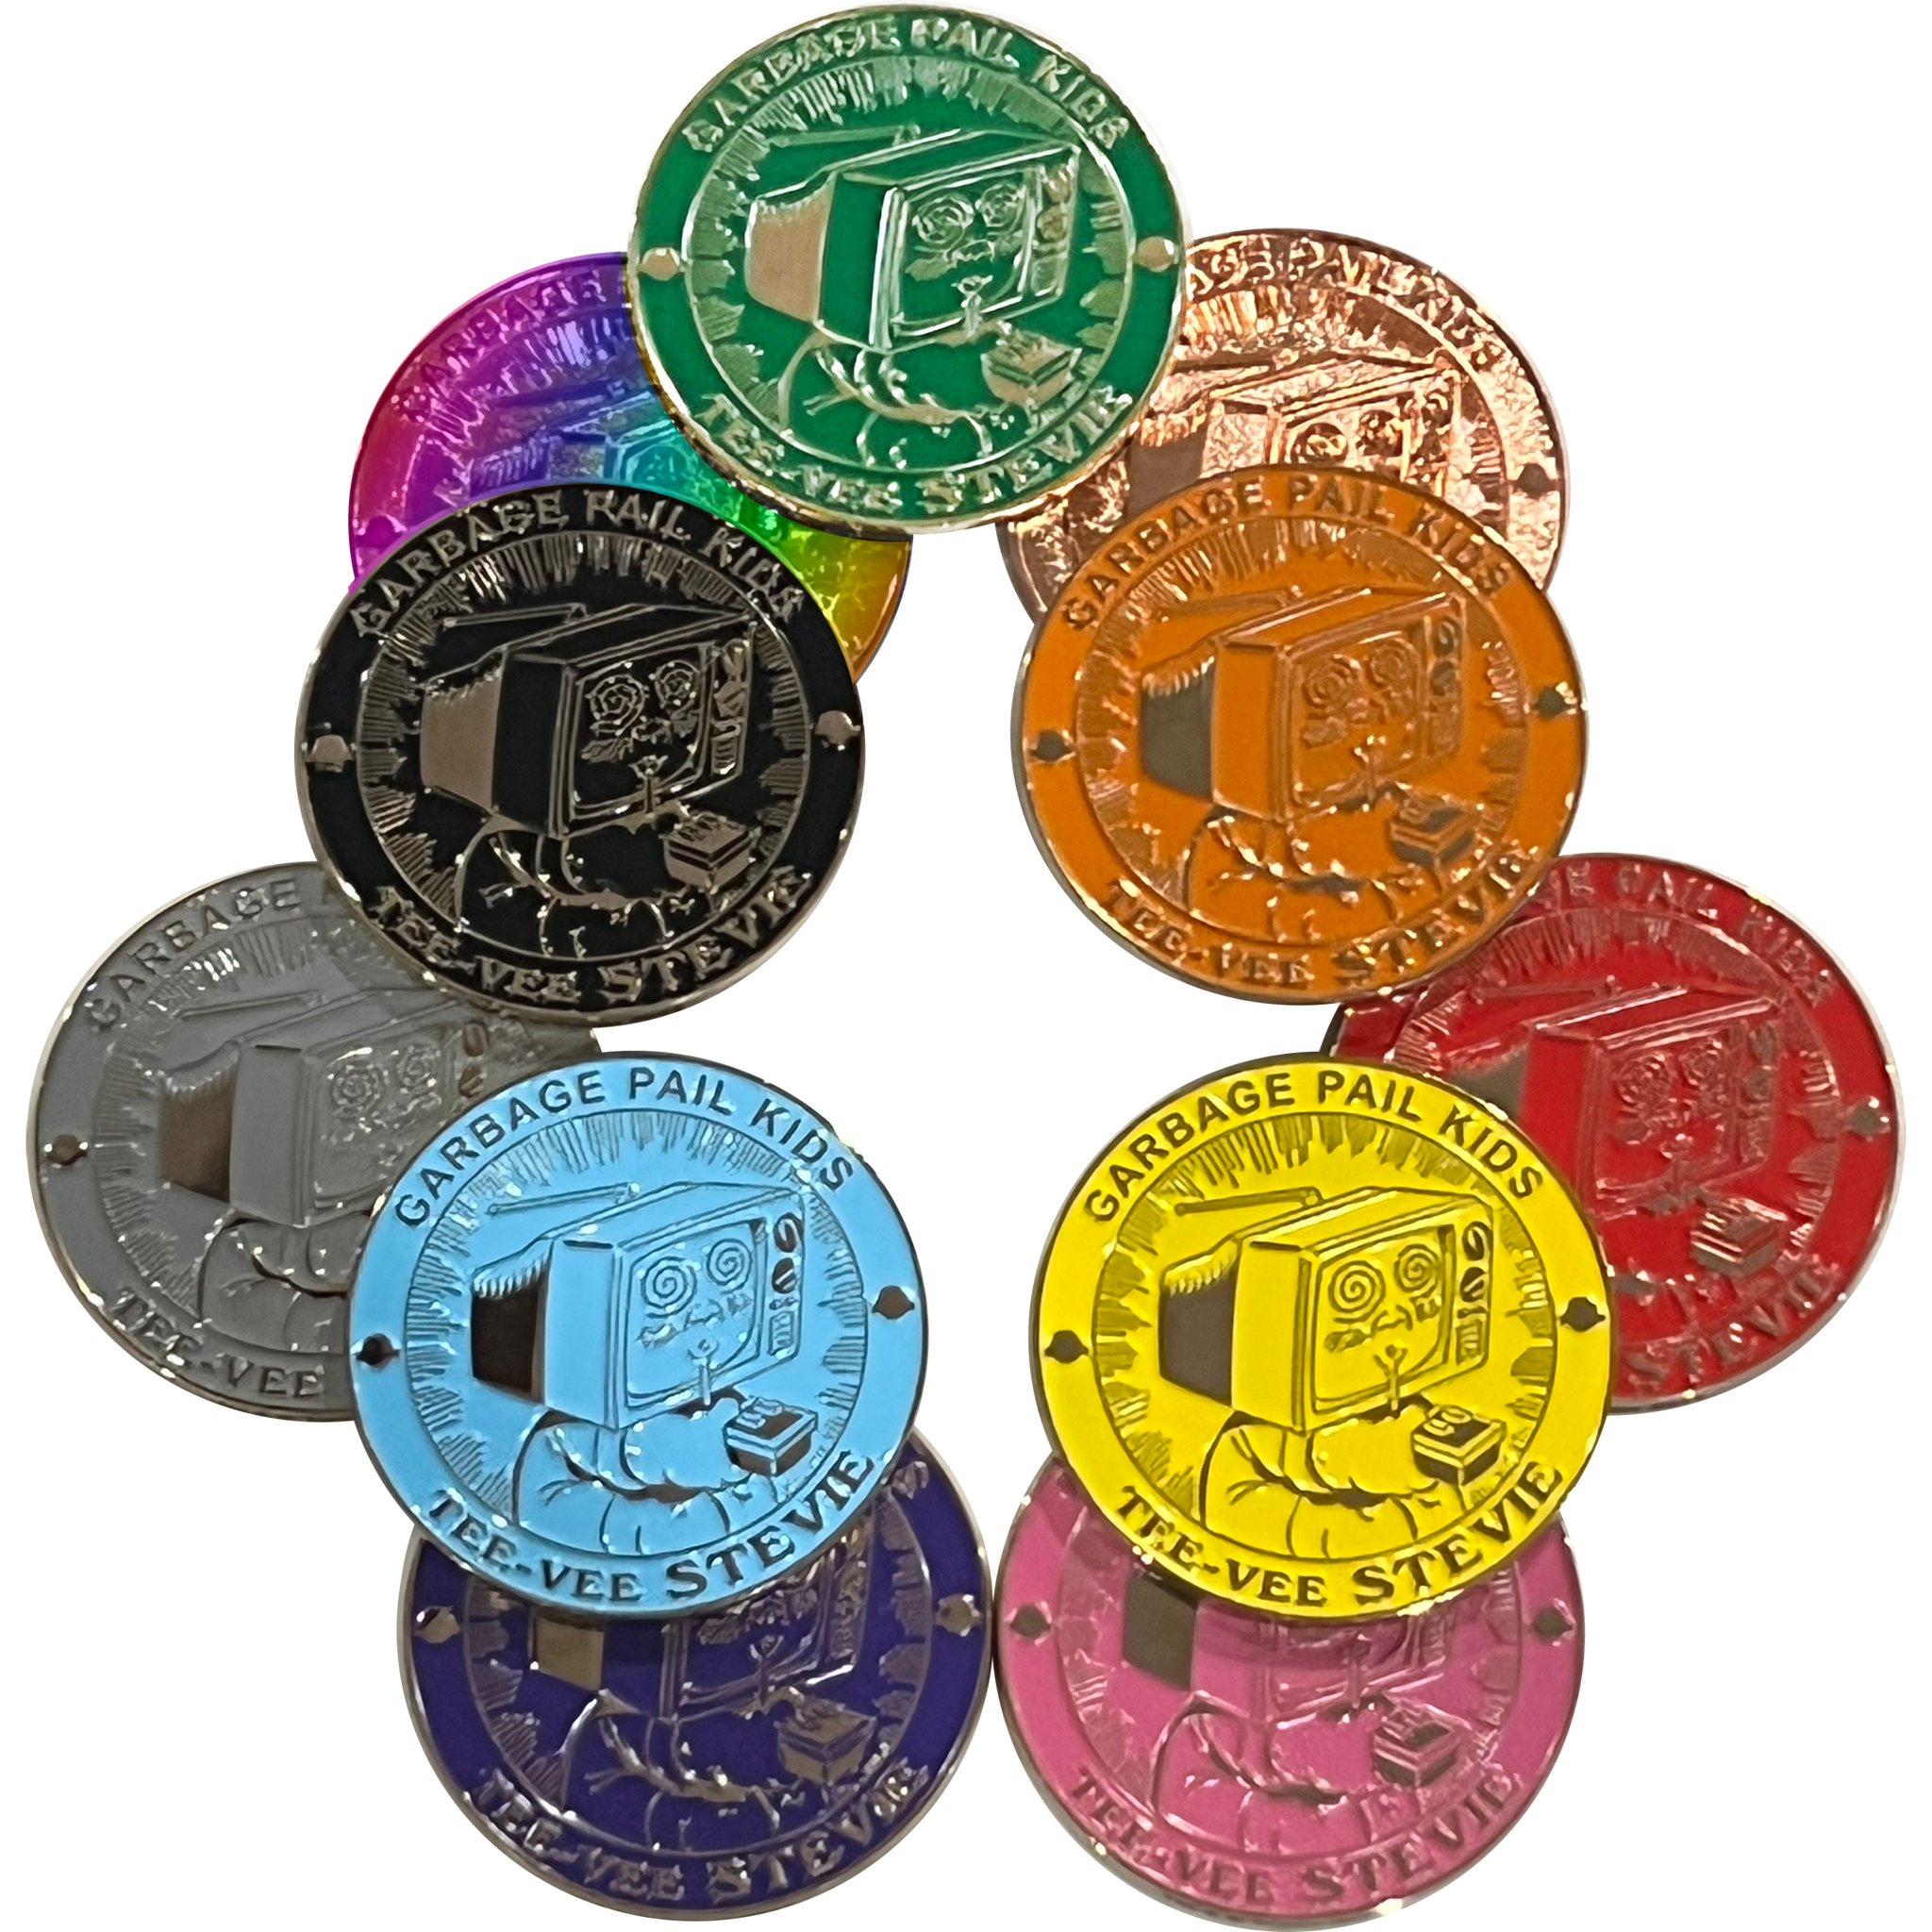 Tee-Vee Stevie 11 coin set